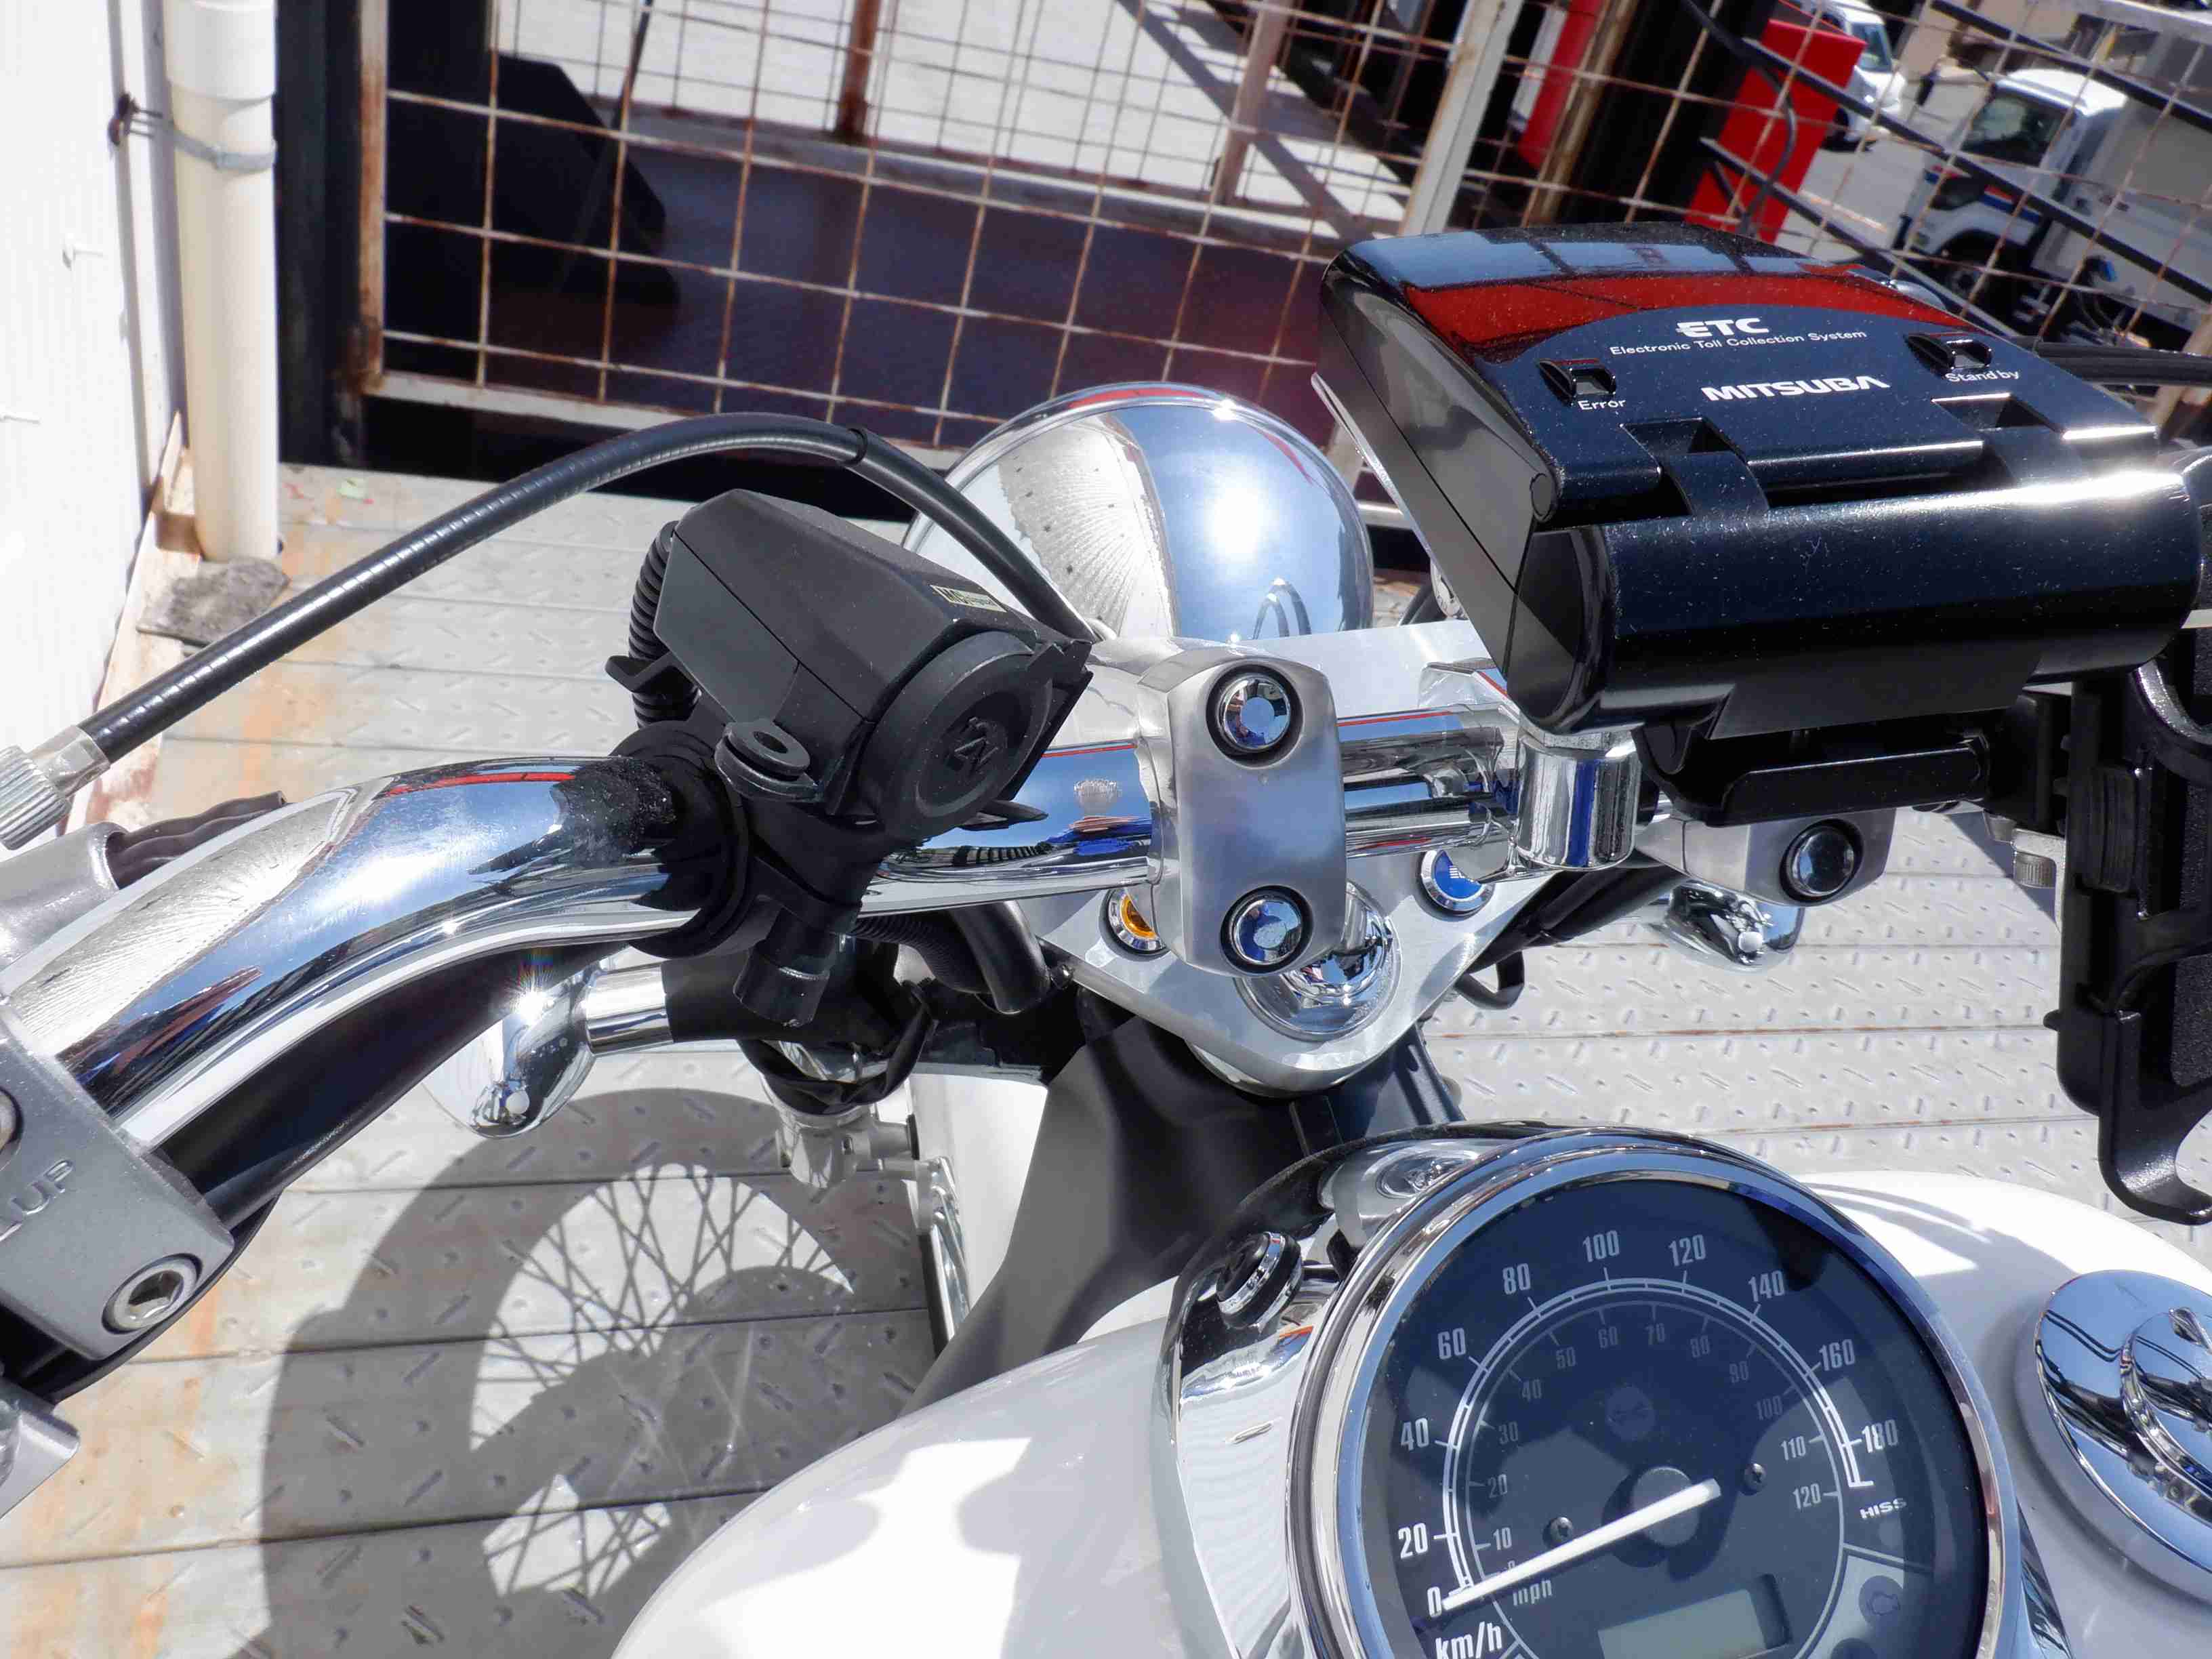 ホンダ シャドウ400カスタム バイク探し U Media ユーメディア 中古バイク 新車バイク探しの決定版 神奈川 東京でバイク探すならユーメディア